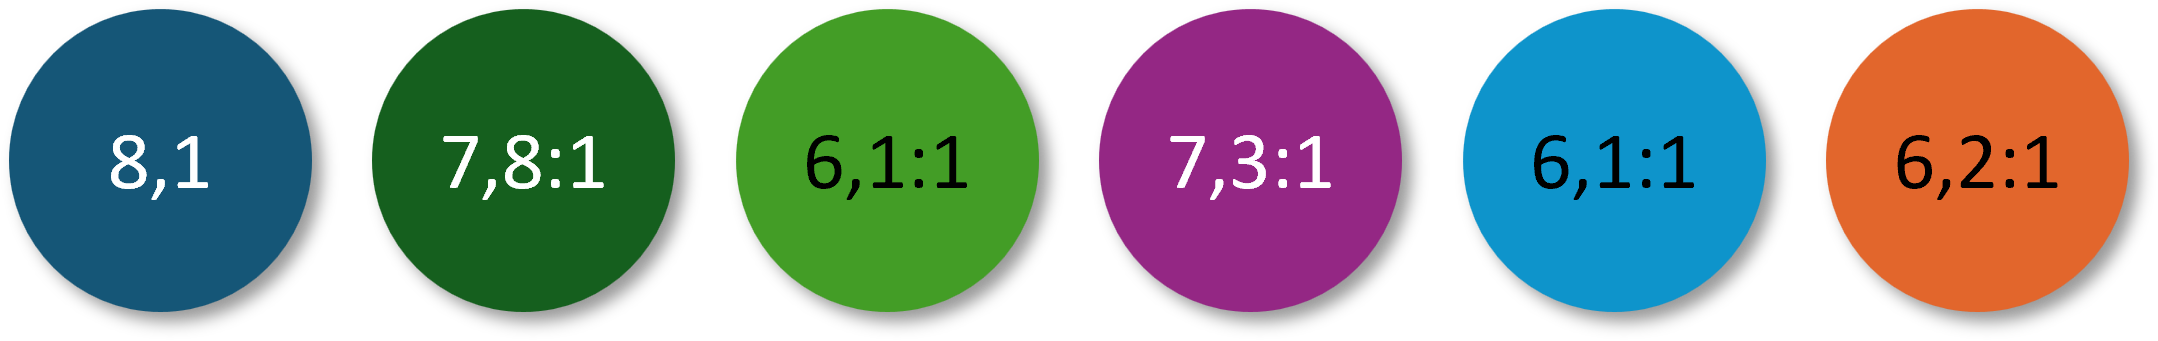 Die sechs Punkte mit den Farbwerten. Diesmal ist die Schrift in den genannten drei Punkten schwarz und es ergeben sich folgende Kontrastwerte: für das helle Grün 6,1:1, für das helle Blau 6,1:1 und für das Orange 6,2:1.